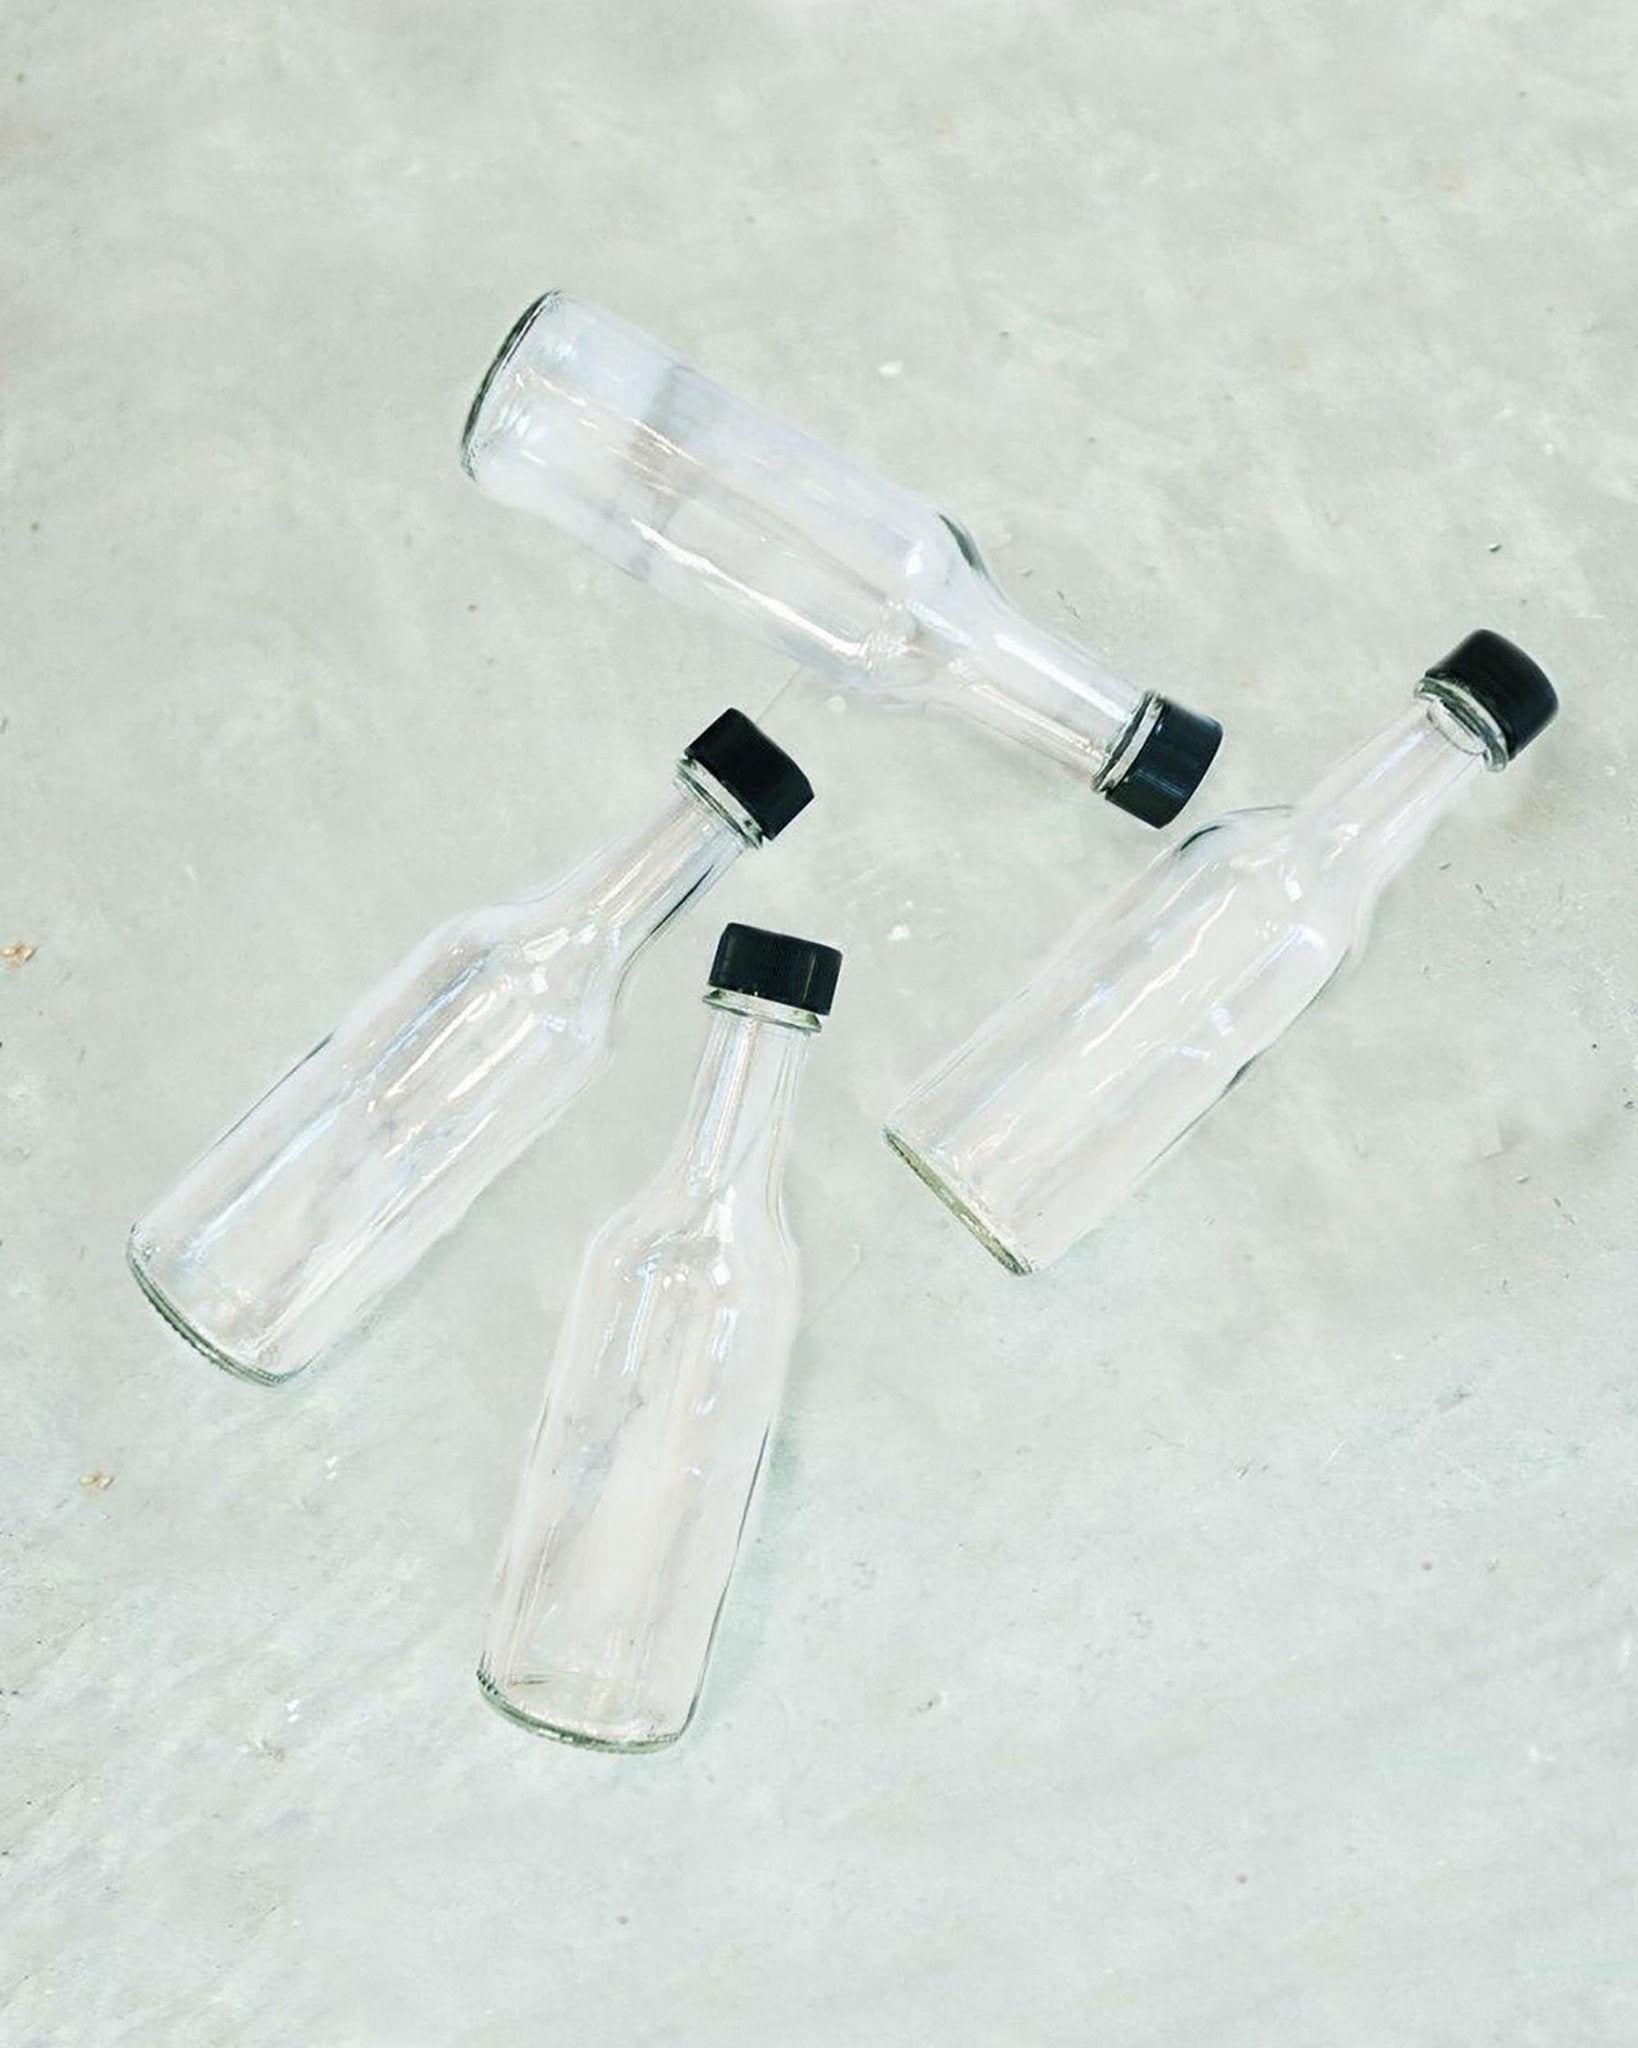 Clear Glass Woozy Bottles w/ Cork Stoppers